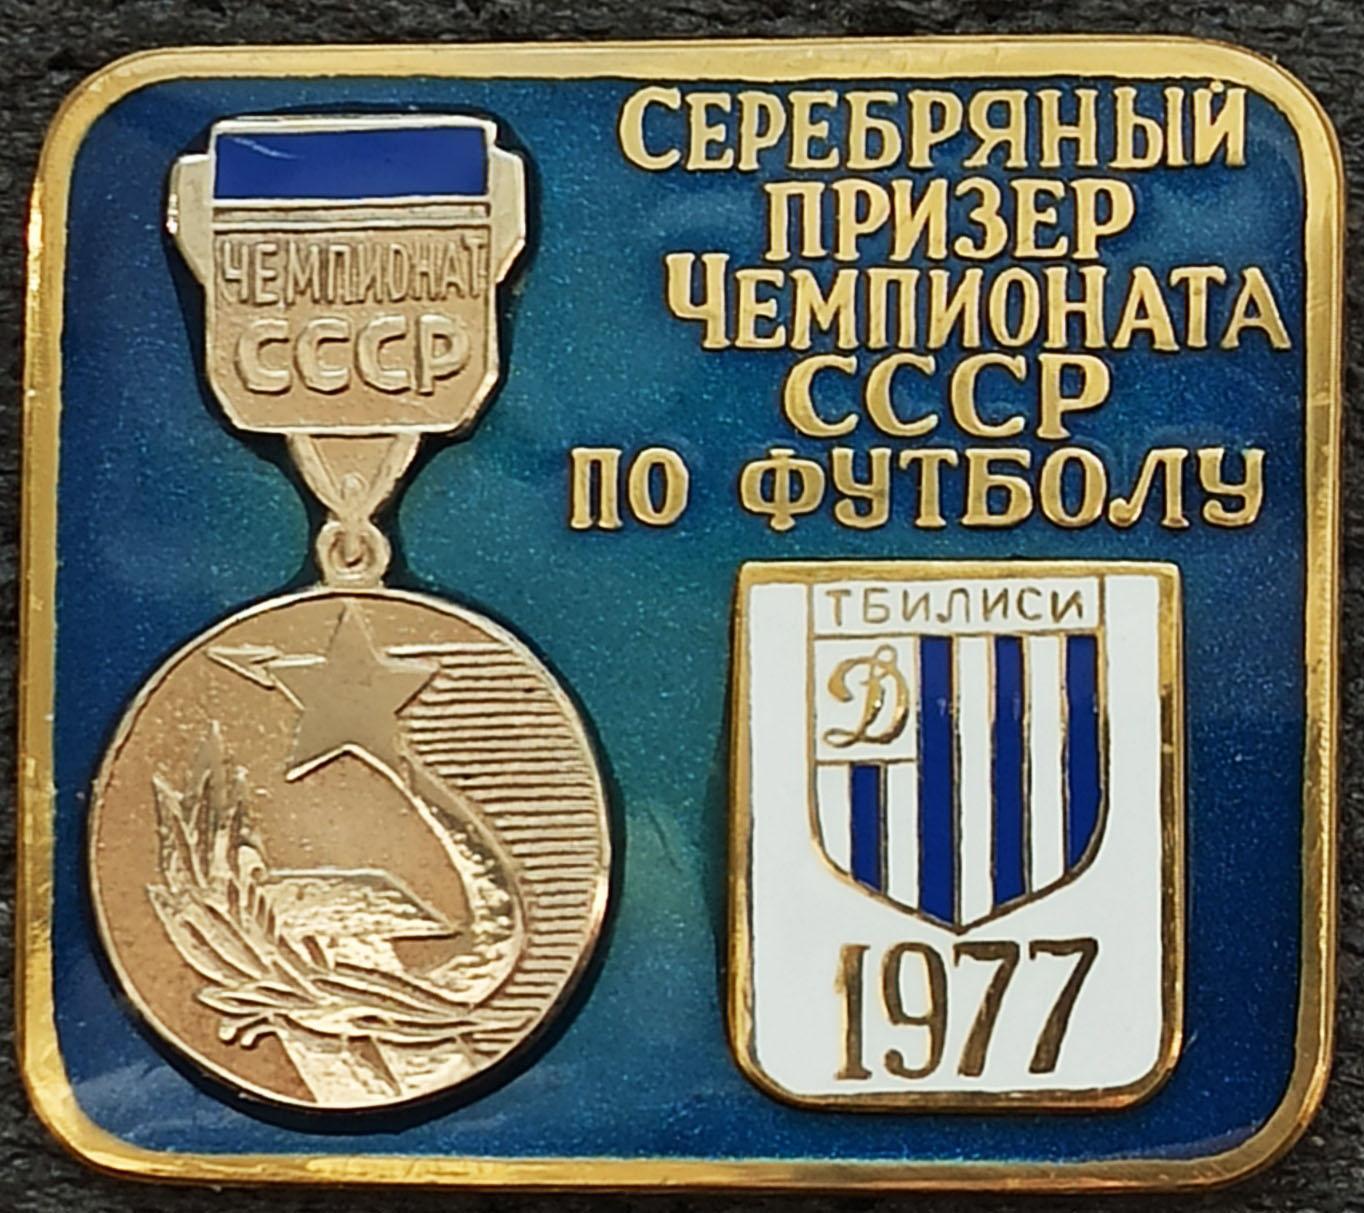 Значoк Знак ФК Динамо Тбилиси Грузия значек Серебряный призер СССР 1977